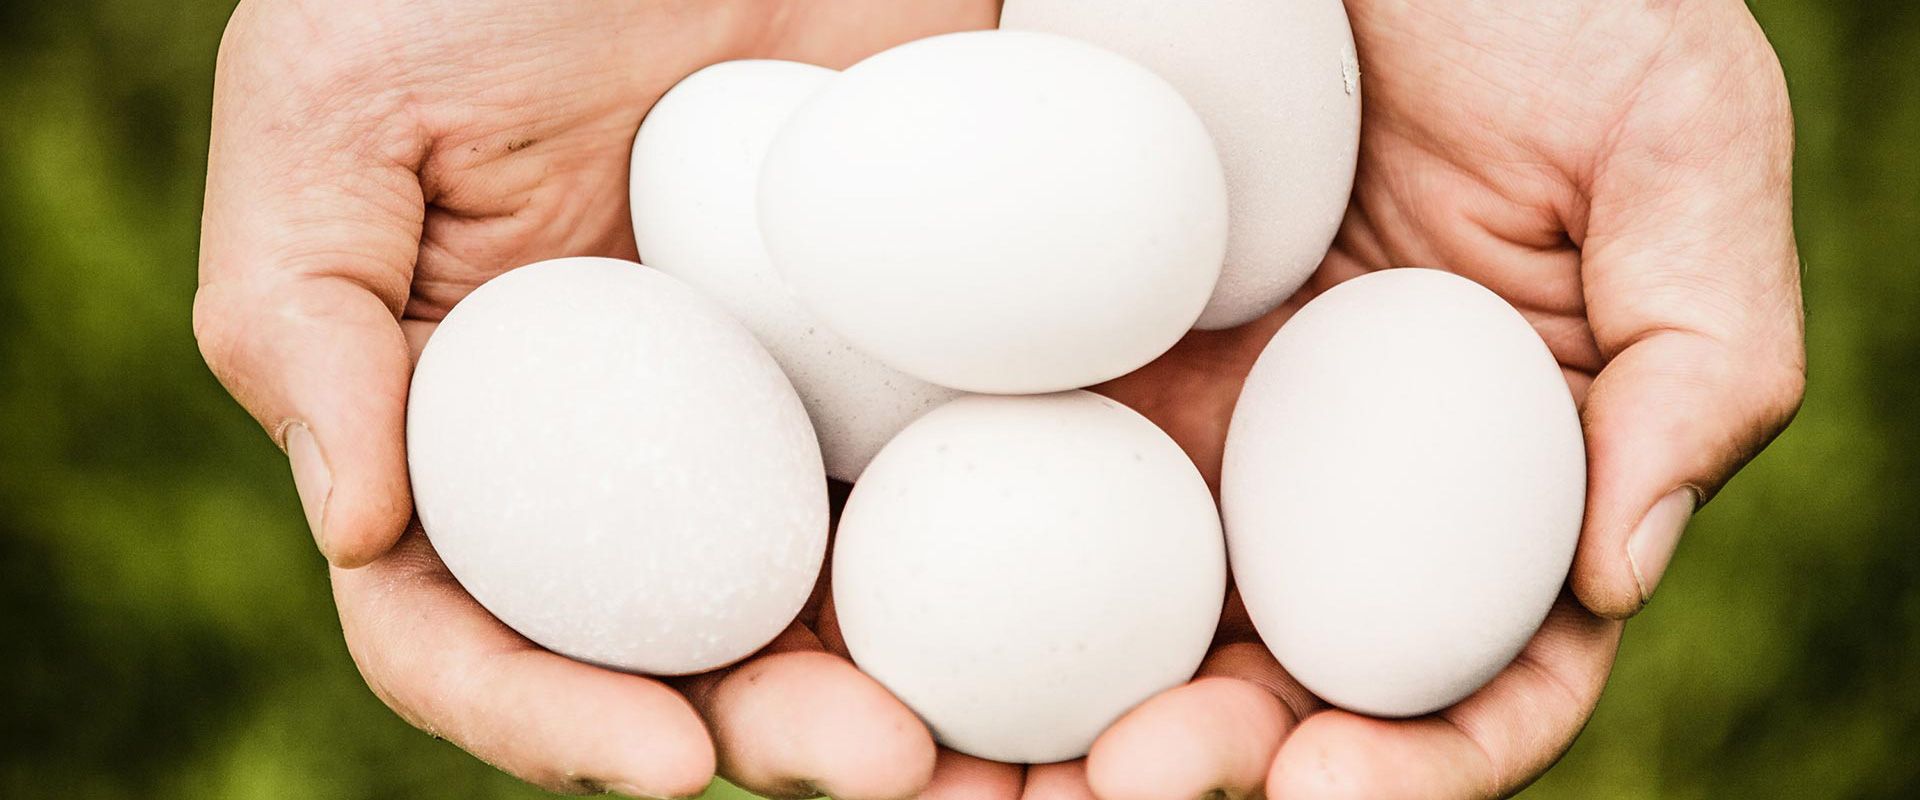 Meet your Ohio egg farmers